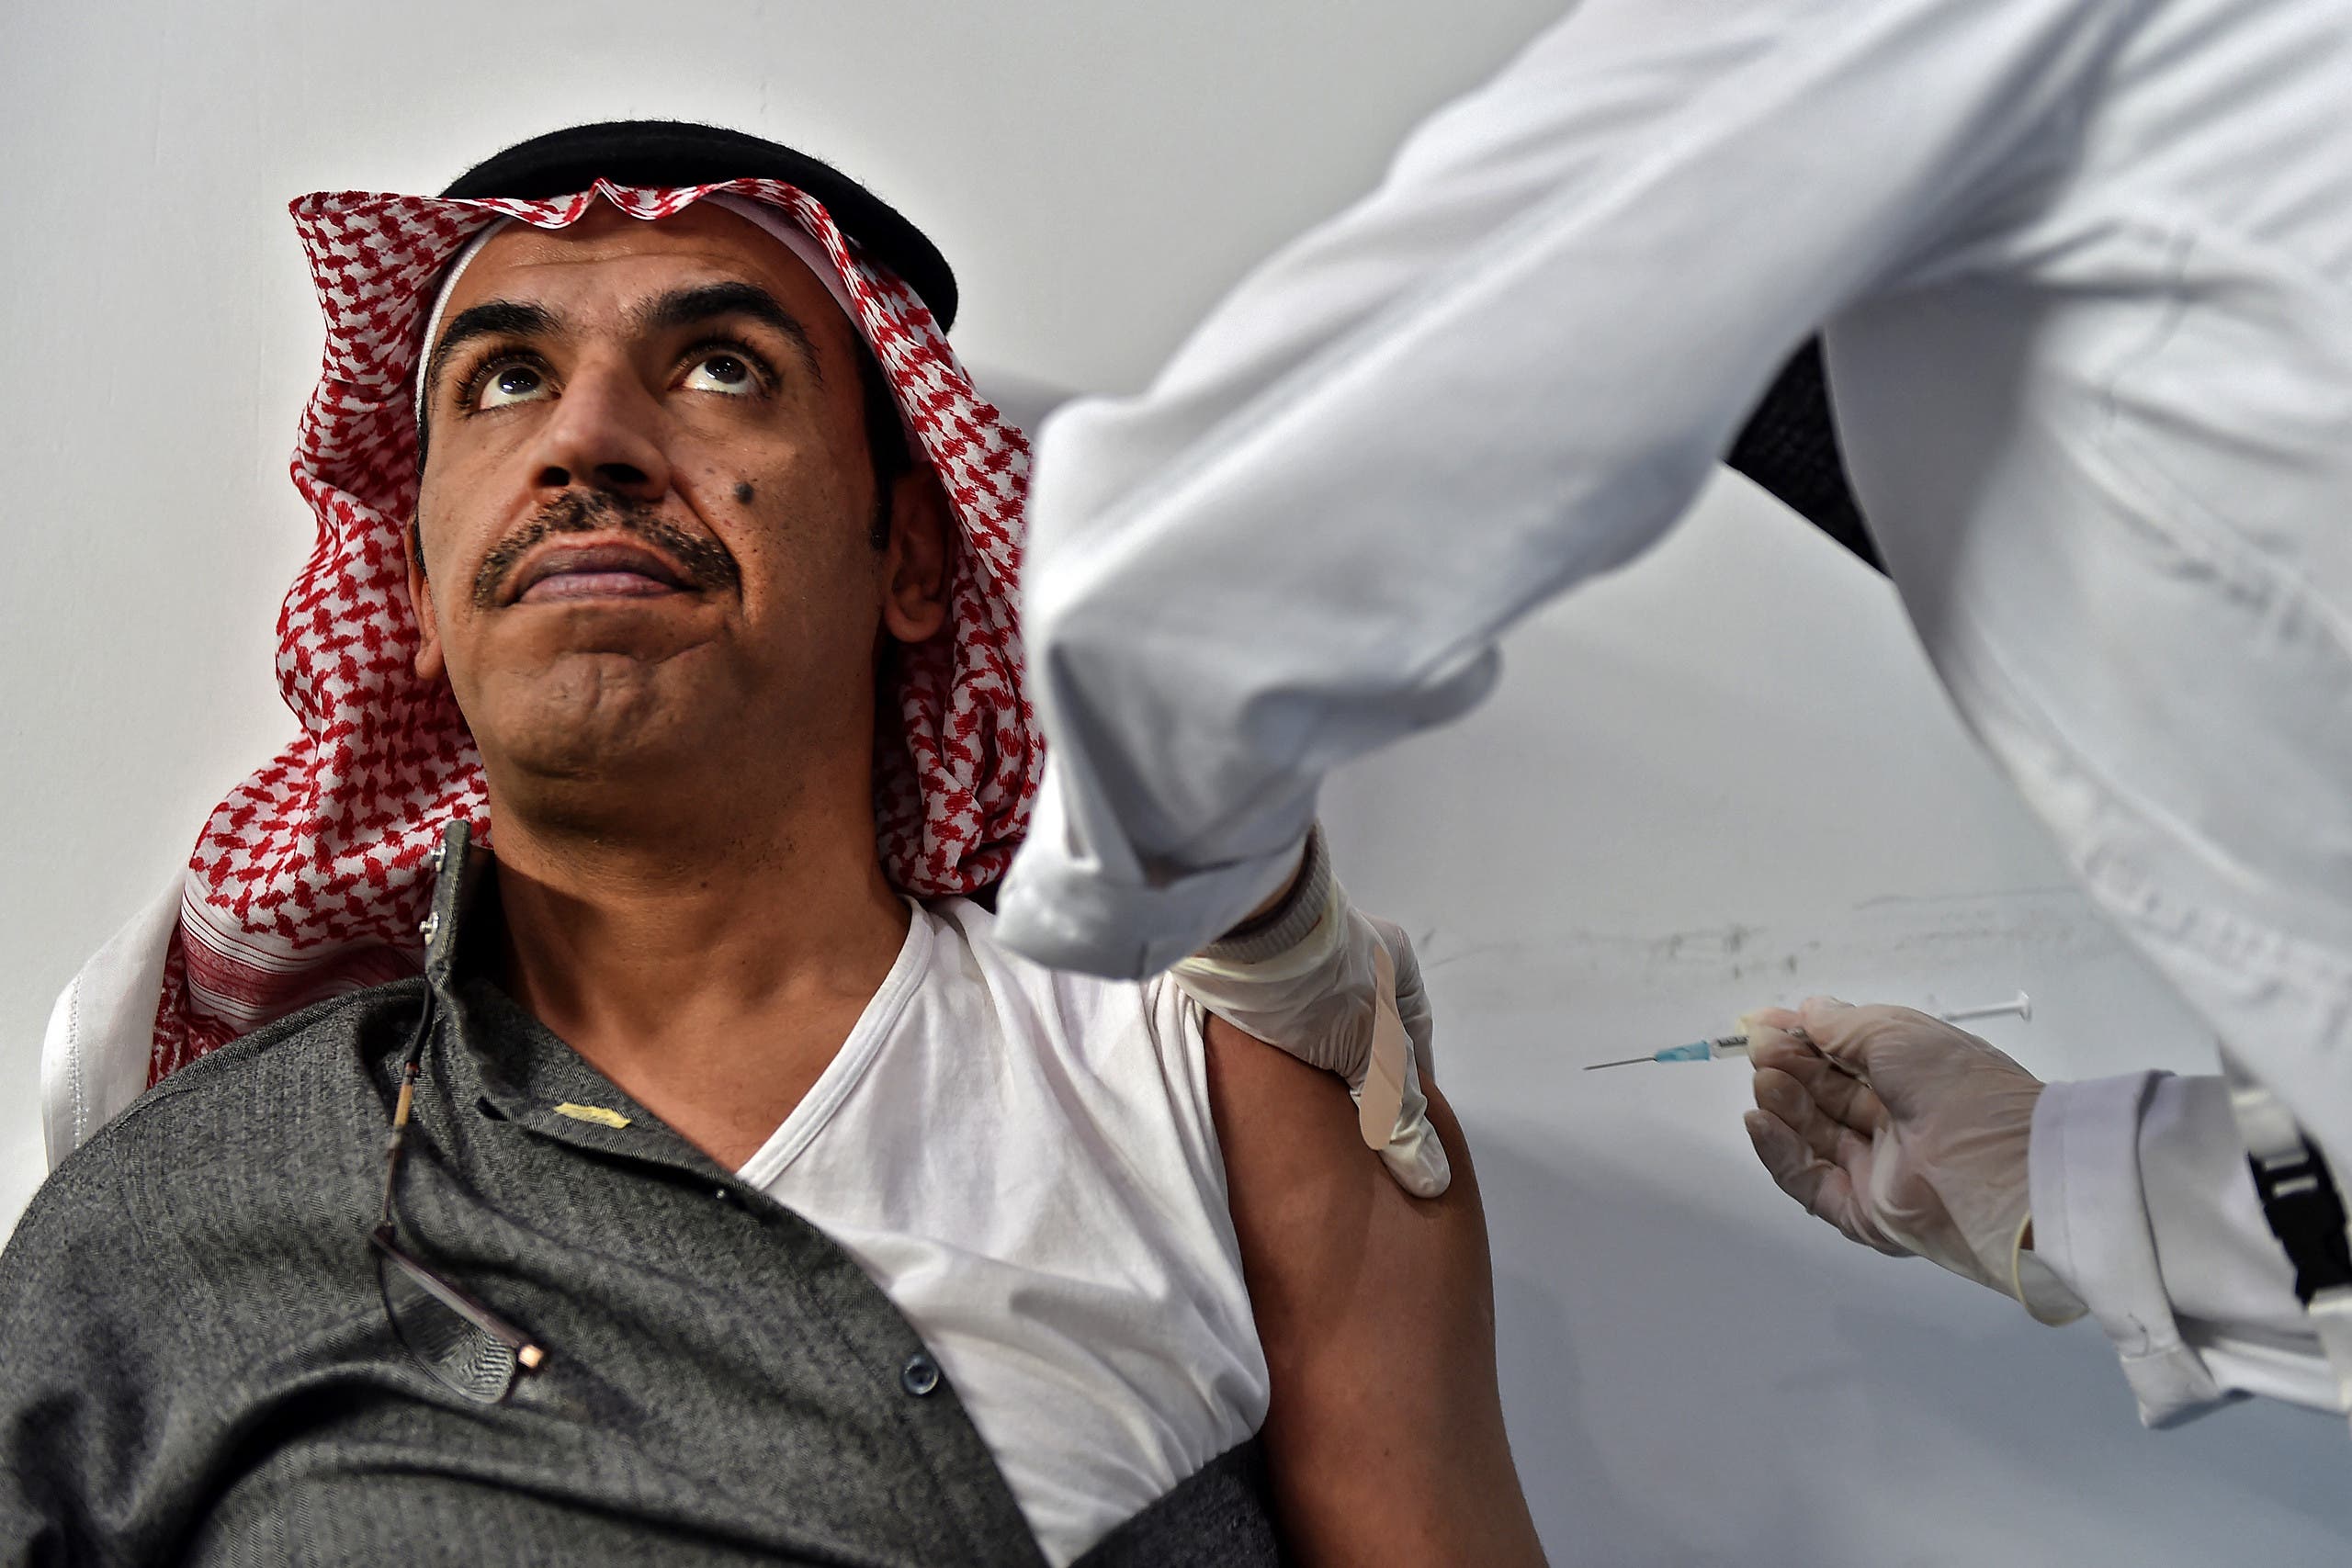 Corona vaccination campaign in Saudi Arabia